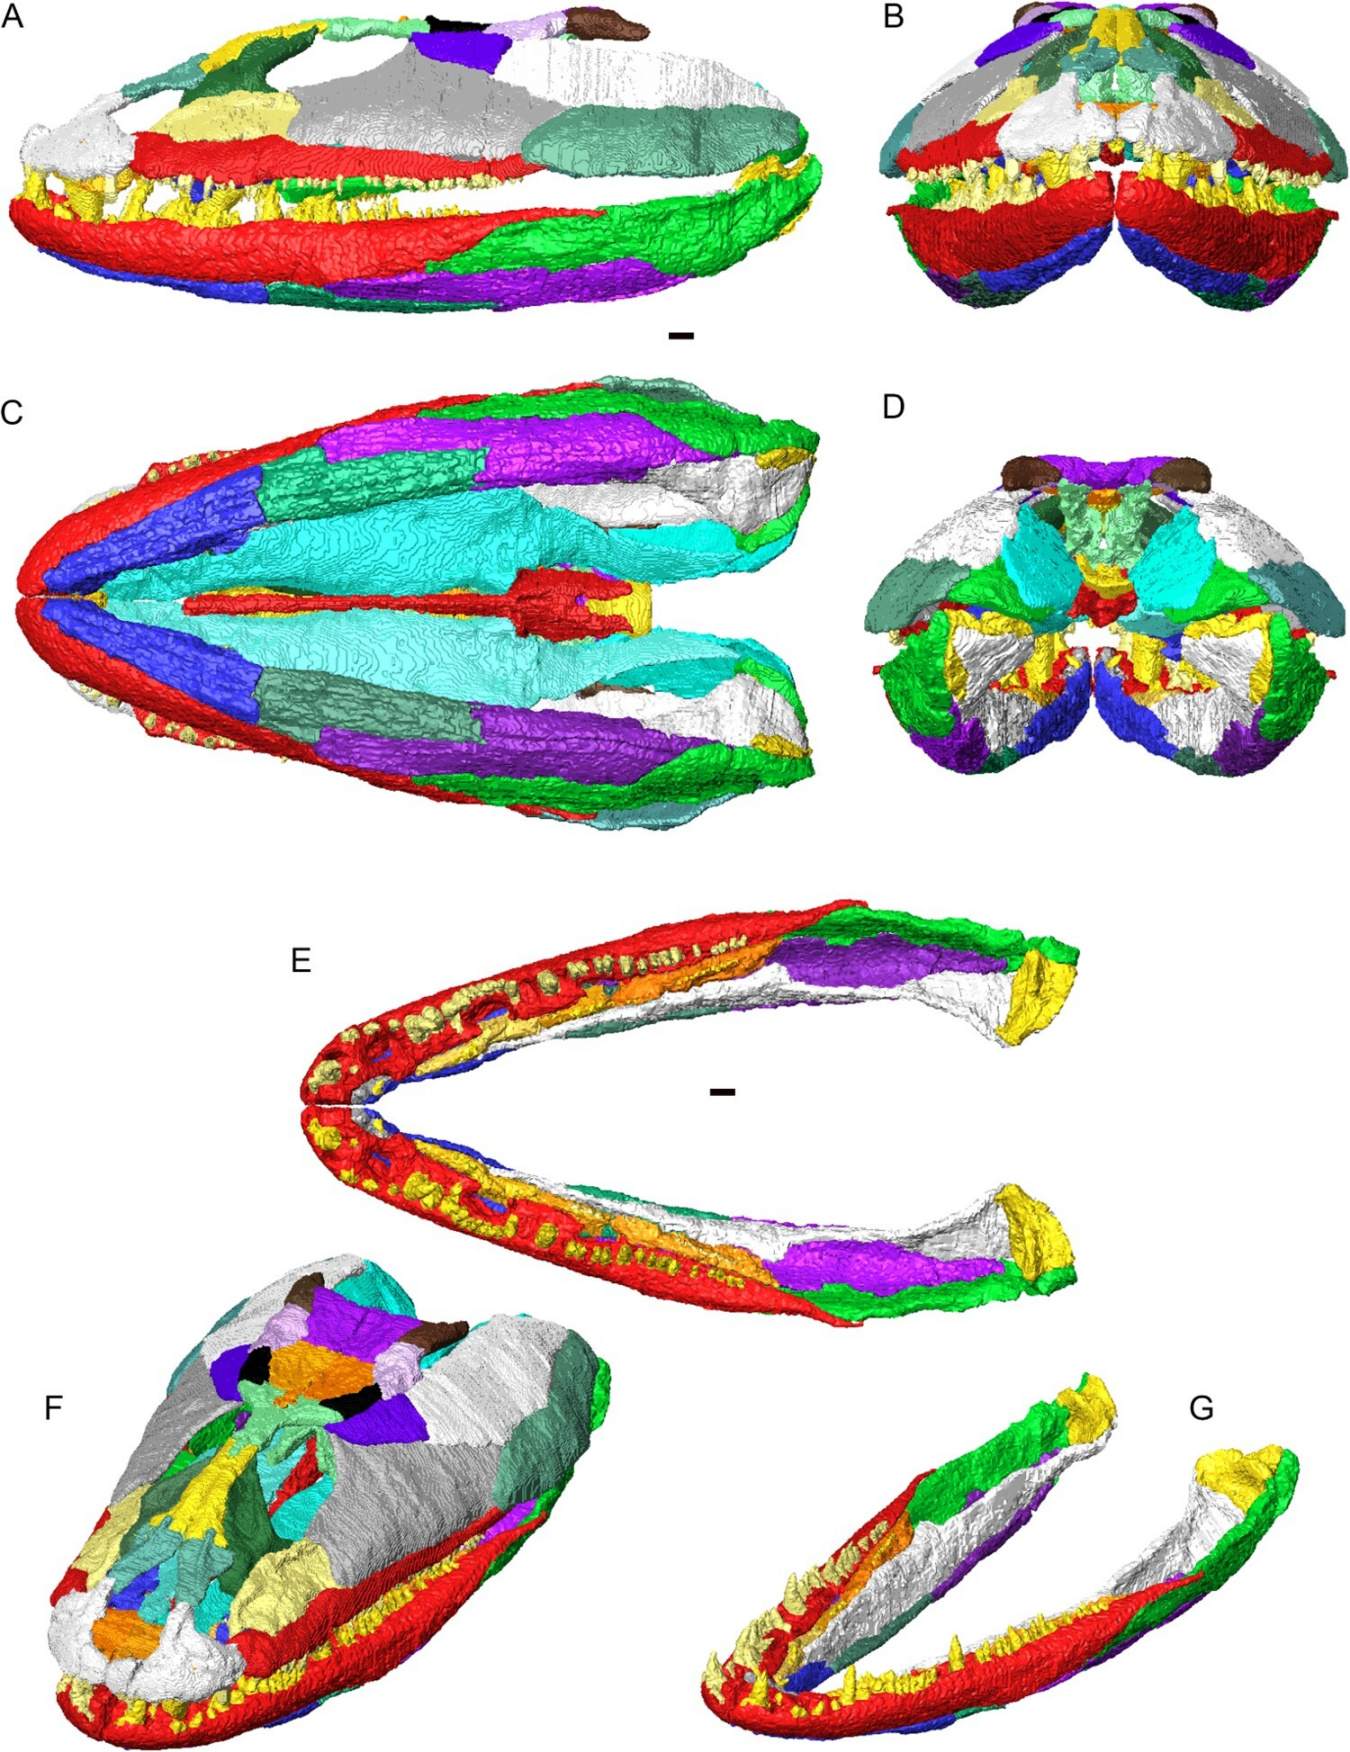 3D rekonstrukcija lubanje i donje čeljusti Crassigyrinus scoticus u artikulaciji. Pojedinačne kosti prikazane različitim bojama. A, pogled s lijeve strane; B, pogled sprijeda; C, pogled s trbušne strane; D, pogled sa stražnje strane; E, zglobne donje čeljusti (bez lubanje) u dorzalnom pogledu; F, lubanja i donja čeljust u dorzolateralnom kosom prikazu; G, zglobne donje čeljusti u dorzolateralnom kosom prikazu.